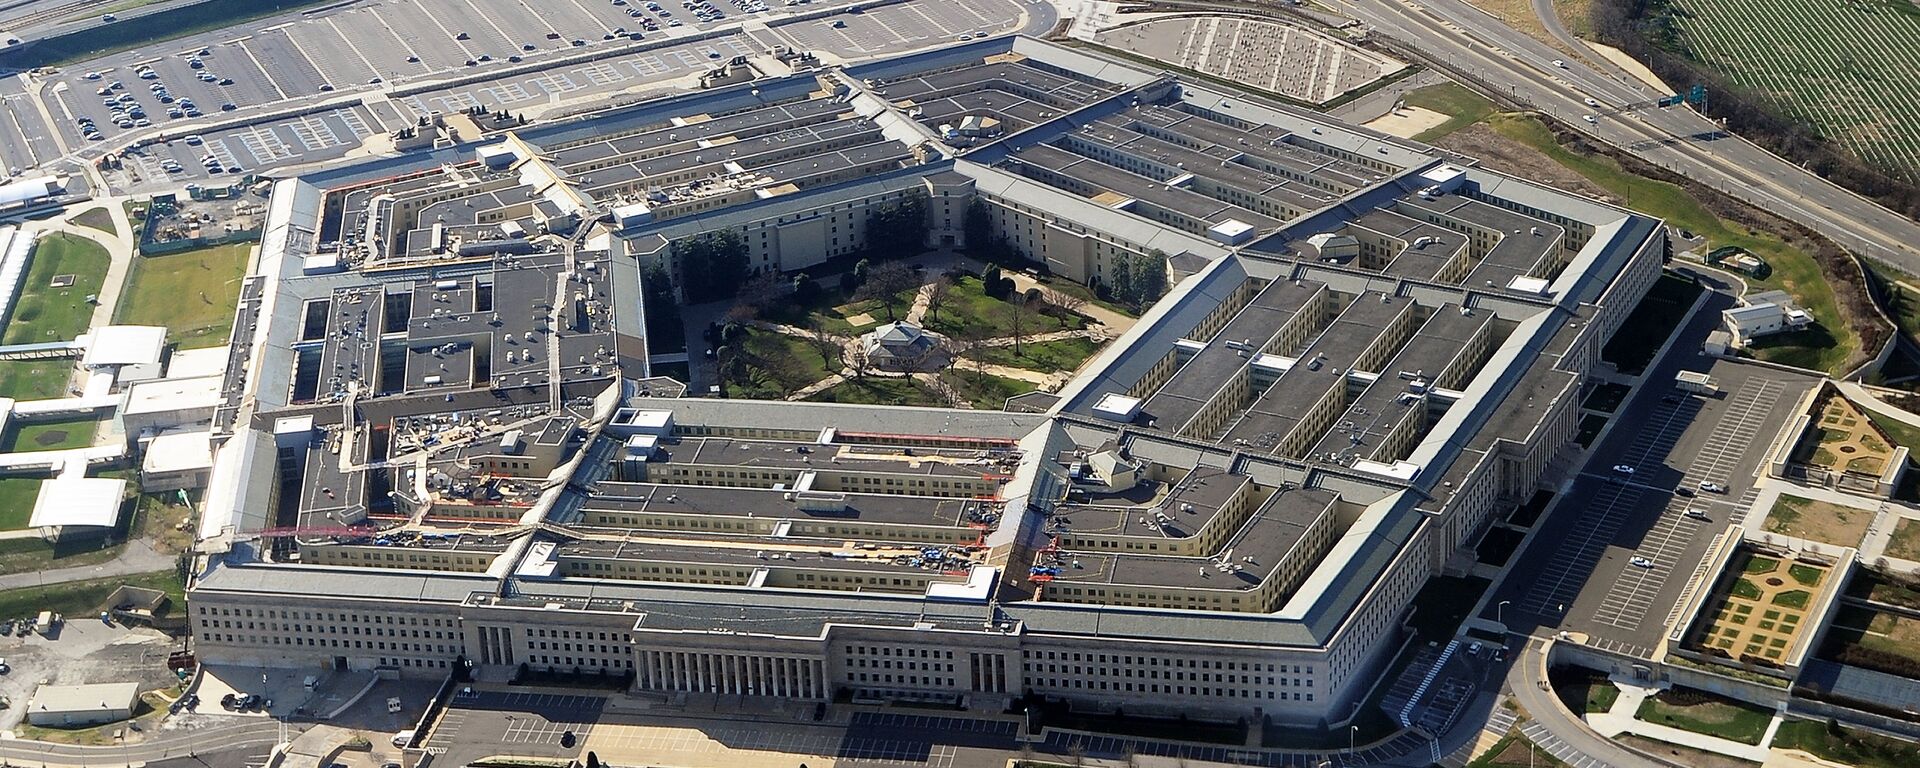 Здание штаб-квартиры Министерства обороны США в Вашингтоне. Архивное фото - Sputnik Кыргызстан, 1920, 22.05.2021